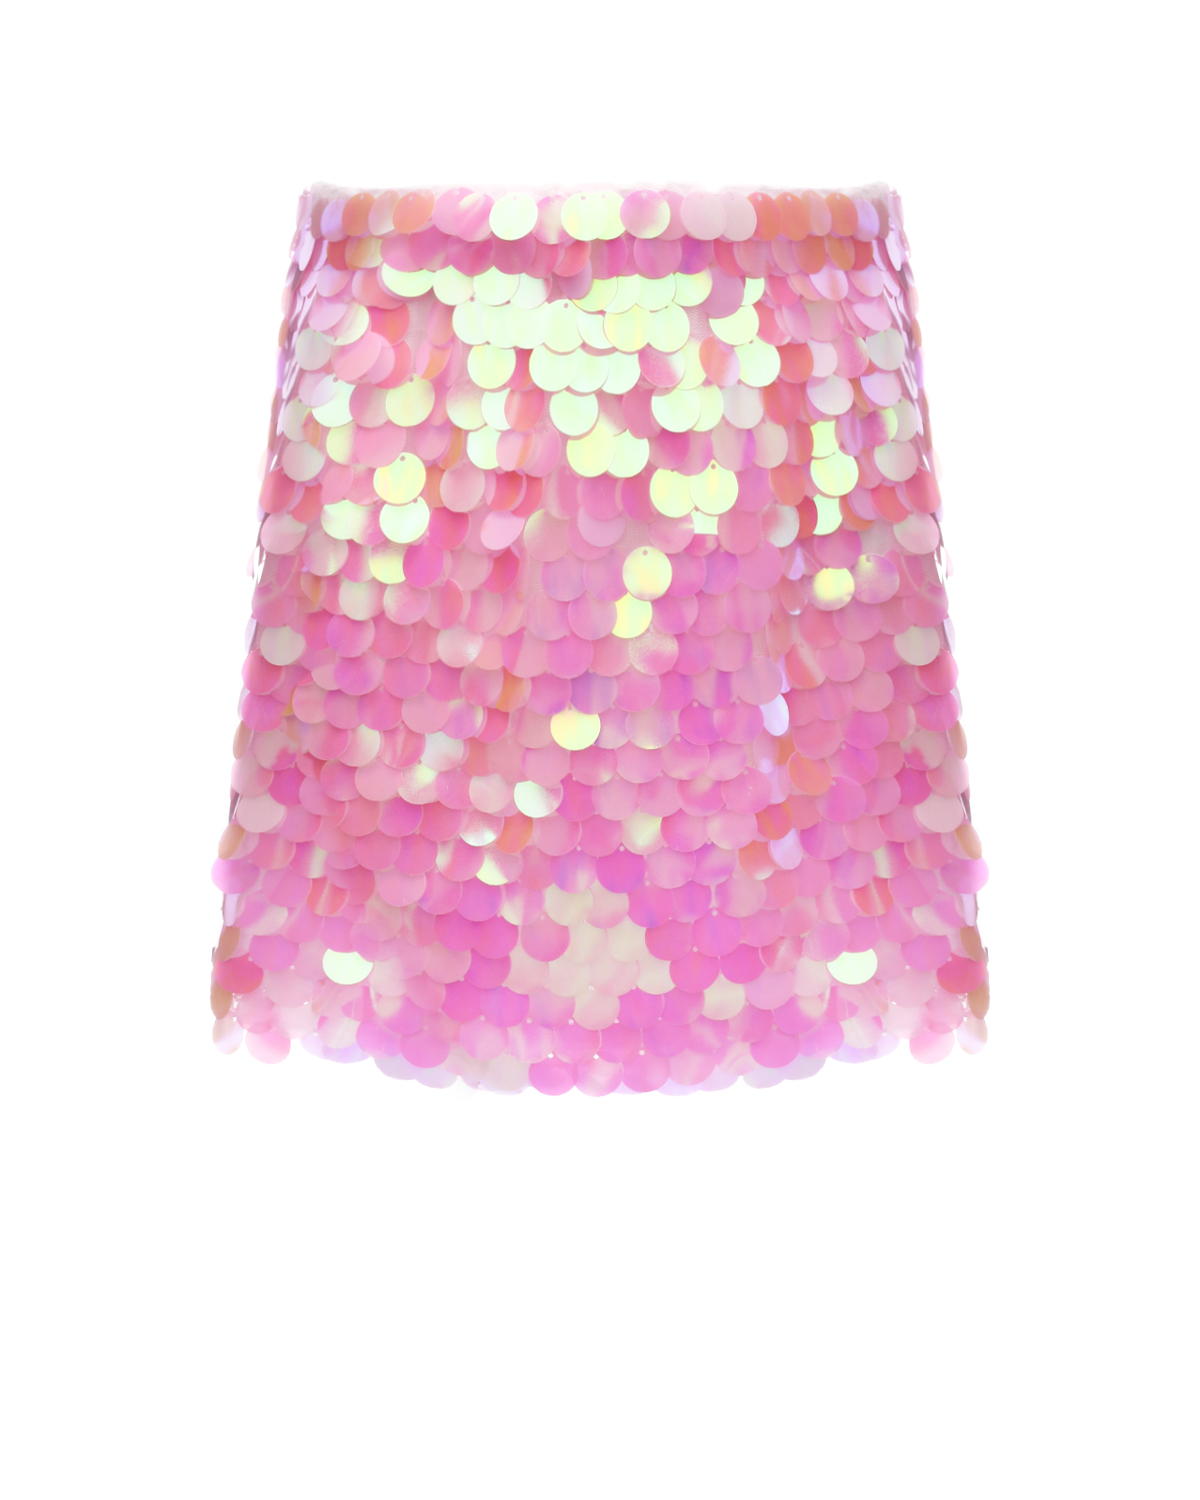 Юбка мини розовая, сплошные крупные пайетки DOUUOD гавайская юбка 40 см двух ная голубо розовая